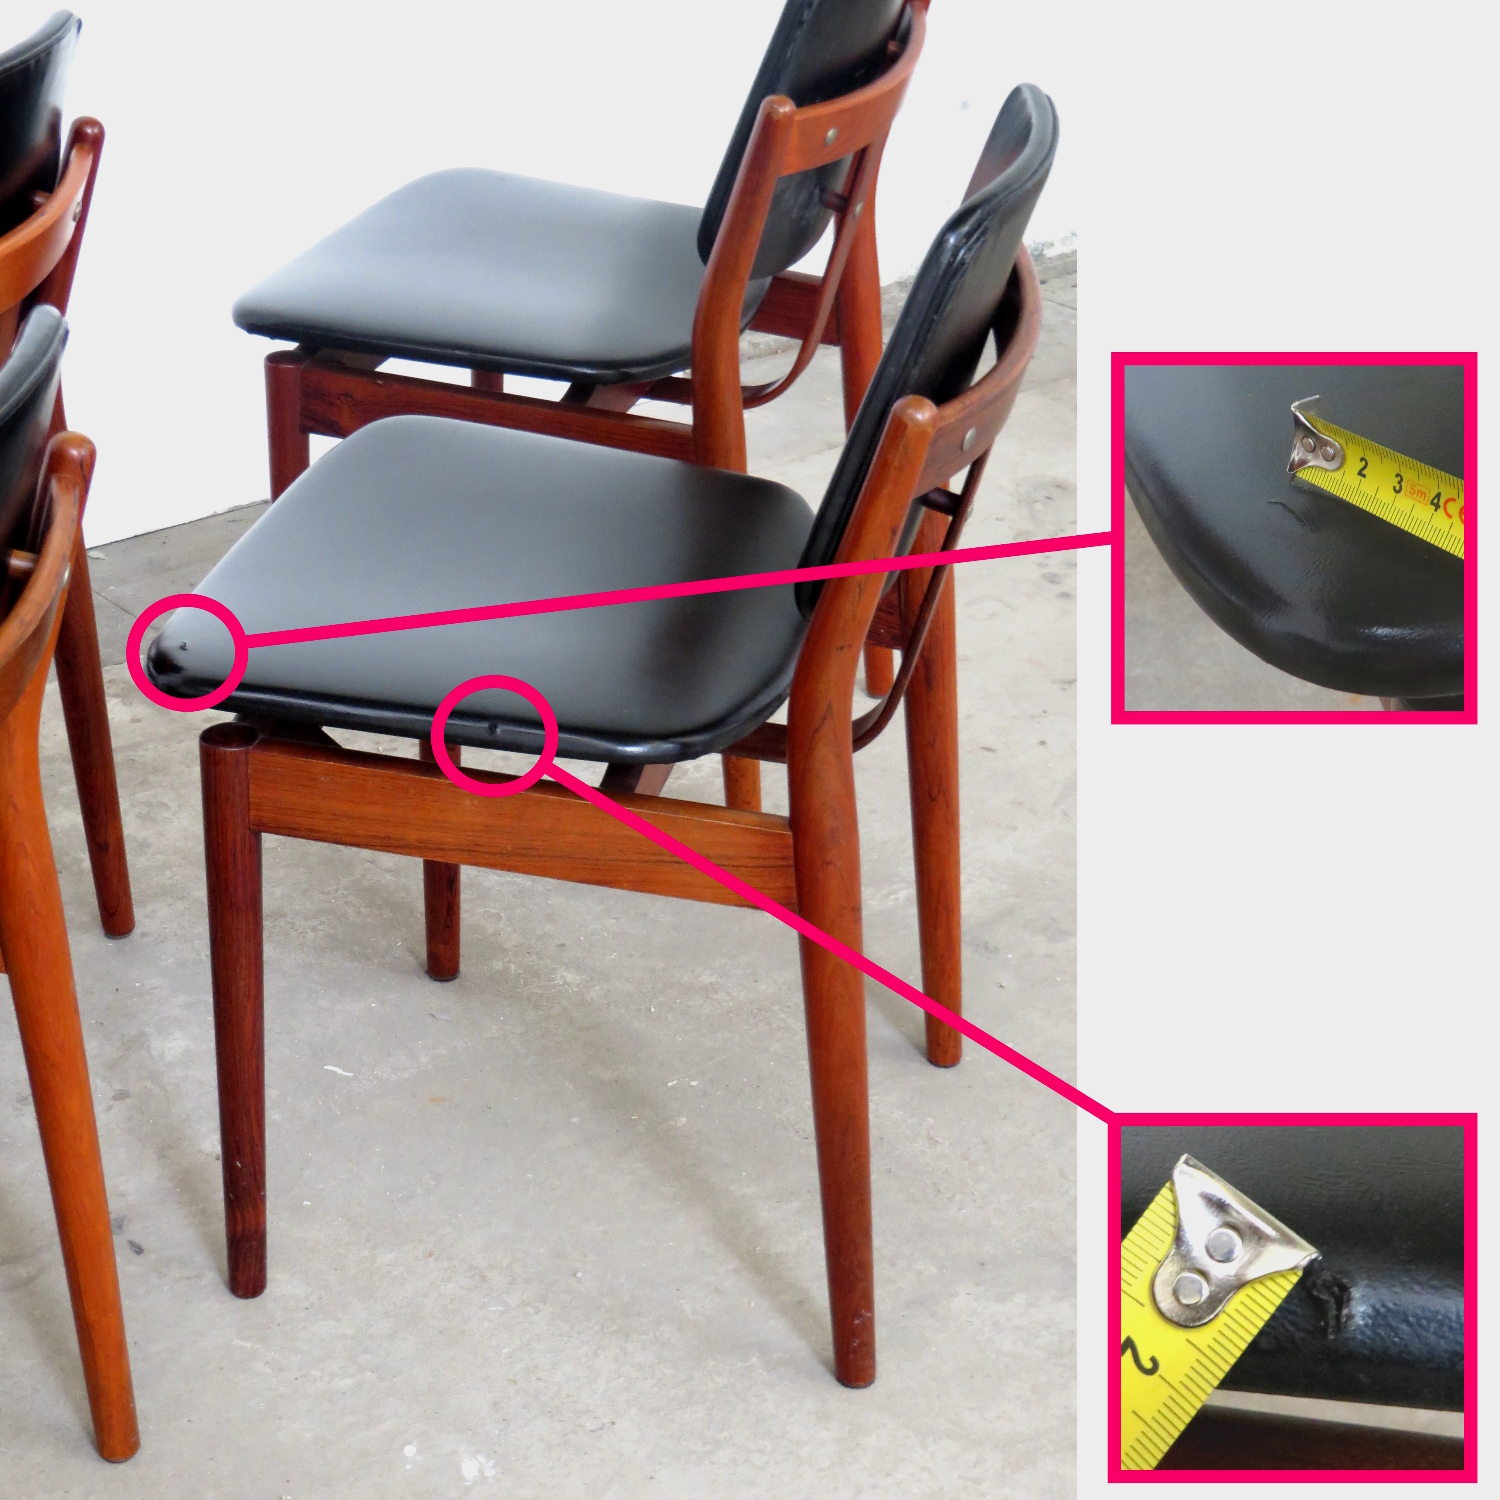 Detailfoto van een stoel met twee kleine beschadigingen in de zitting